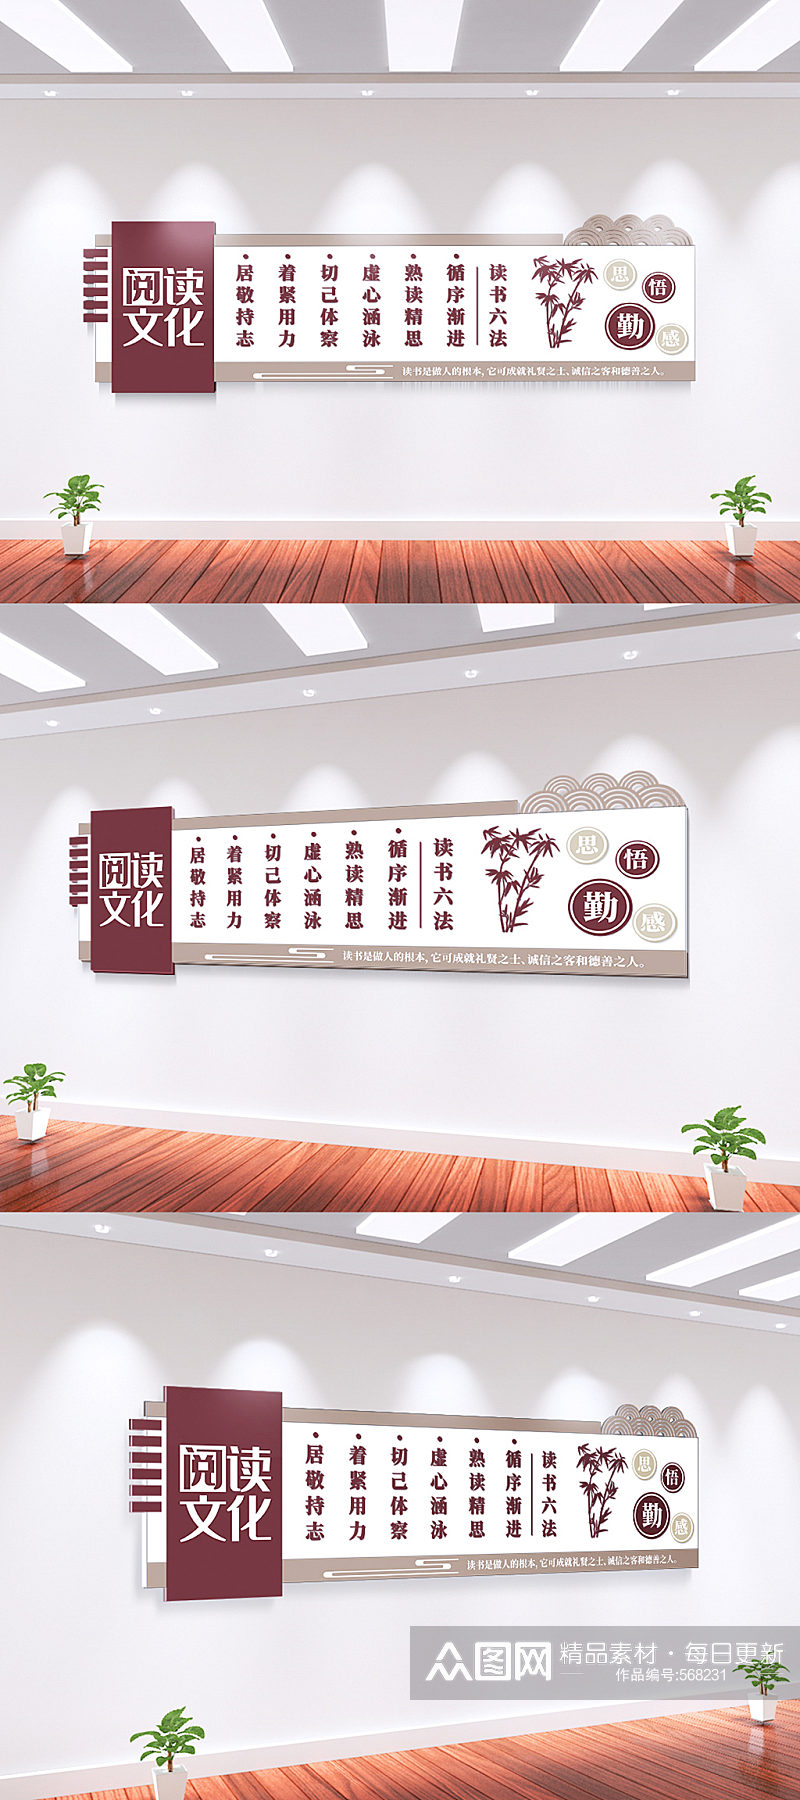 中国风学校图书馆阅览室文化墙素材